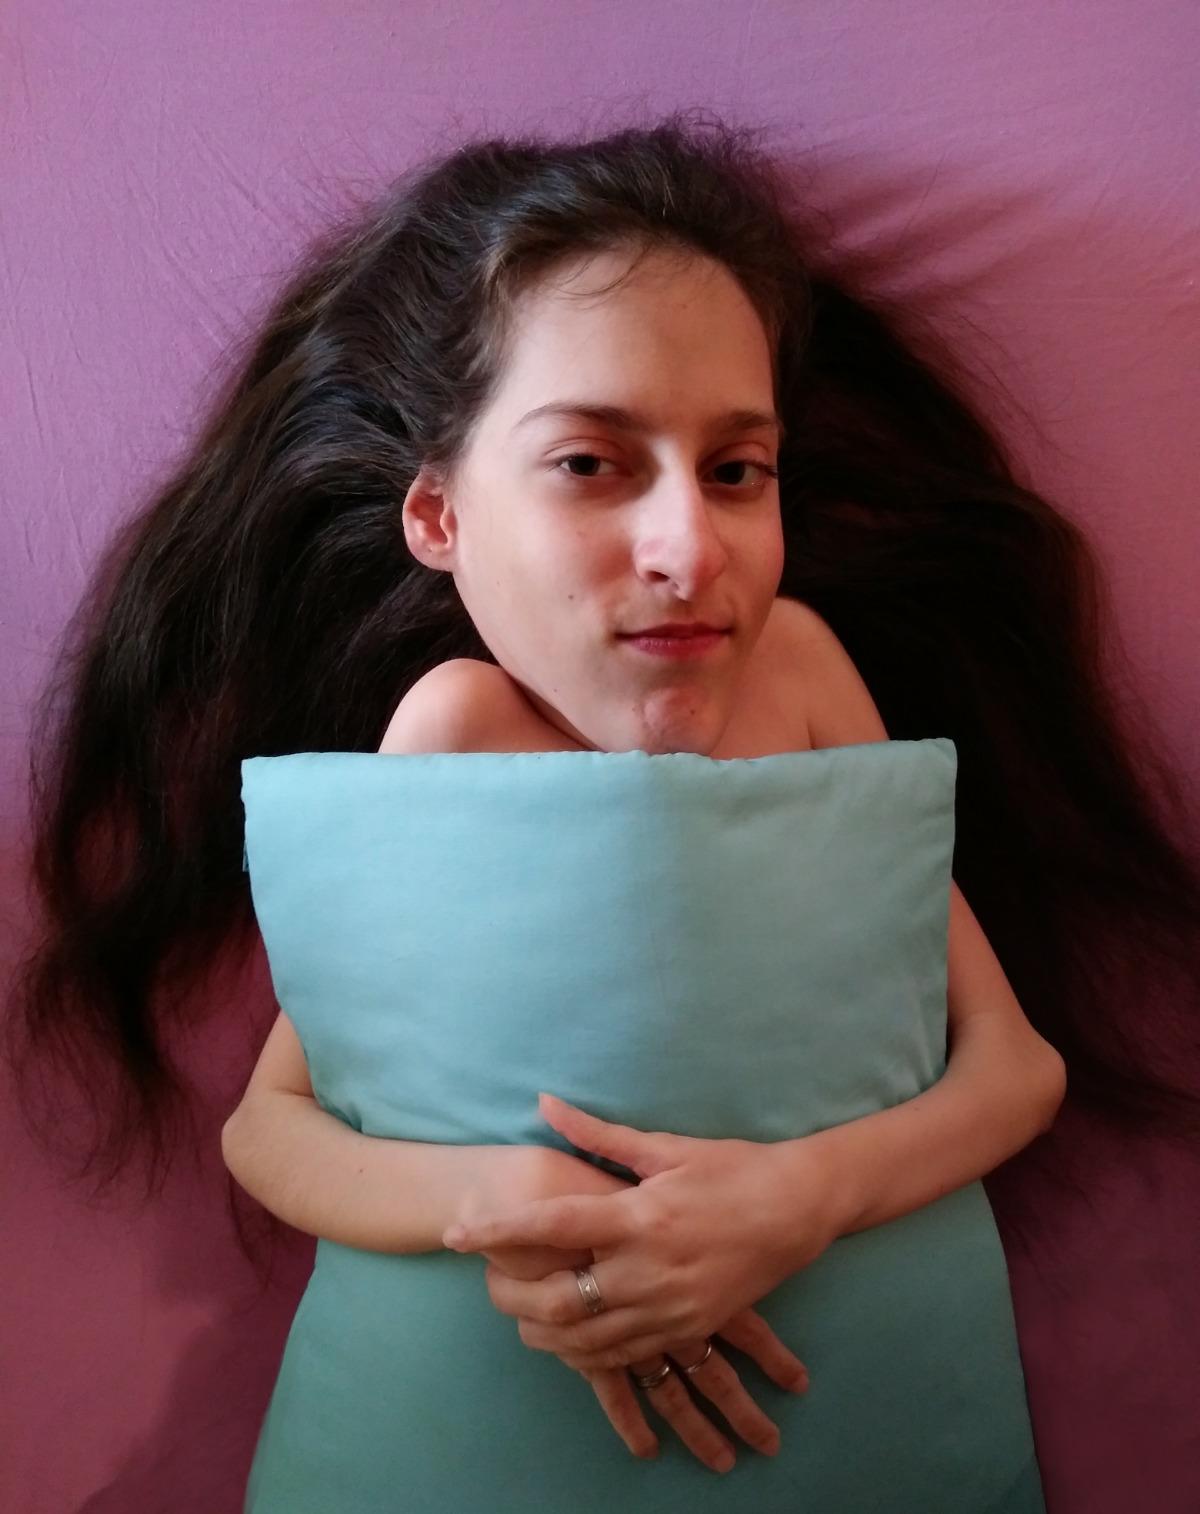 Elena ha un cuscino azzurro tenuto davanti a sé con le braccia incrociate; ha i capelli lunghi castani e accenna un sorriso. Lo sfondo è rosa.